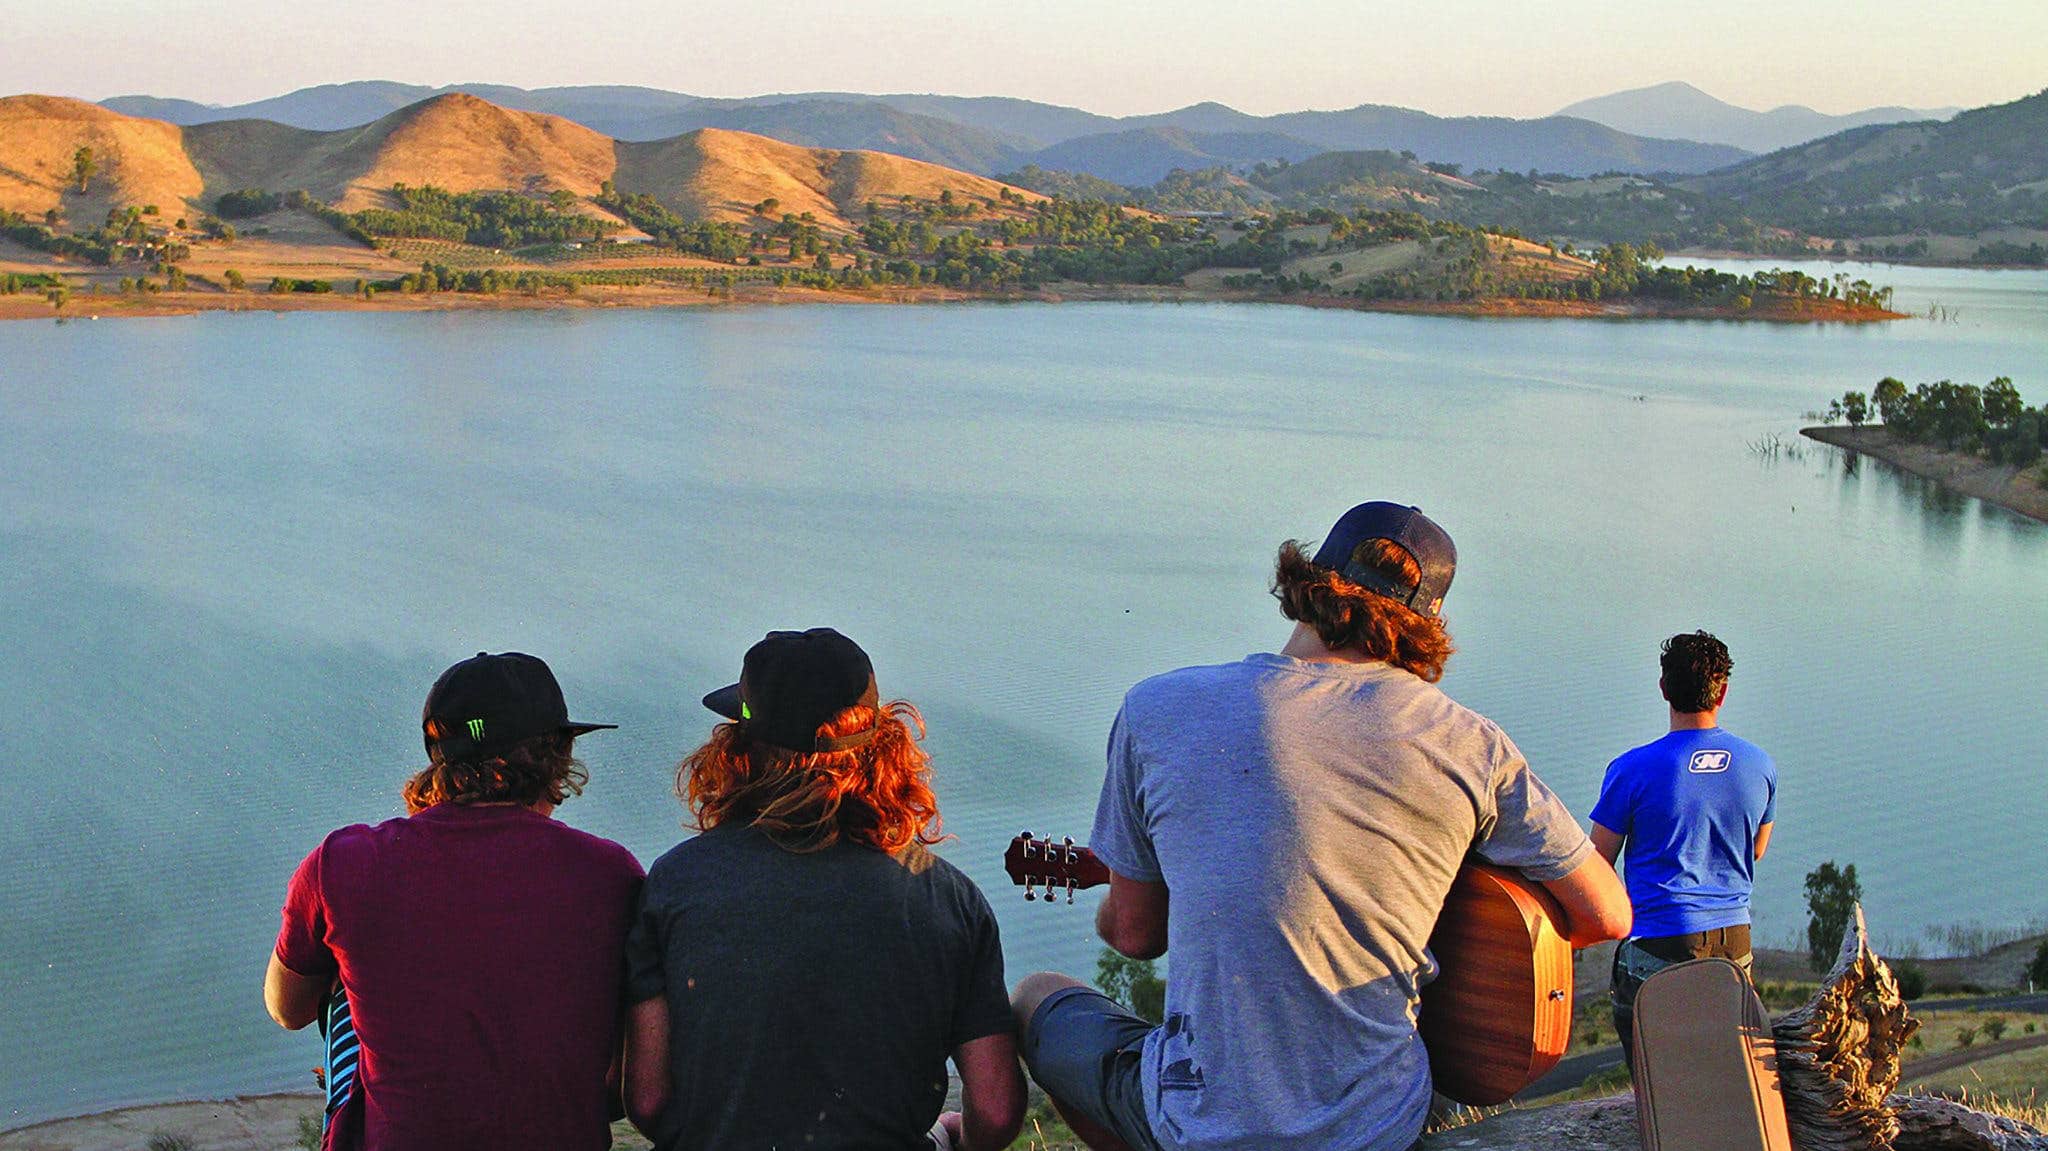 Lake eildon freinds summer guitar view